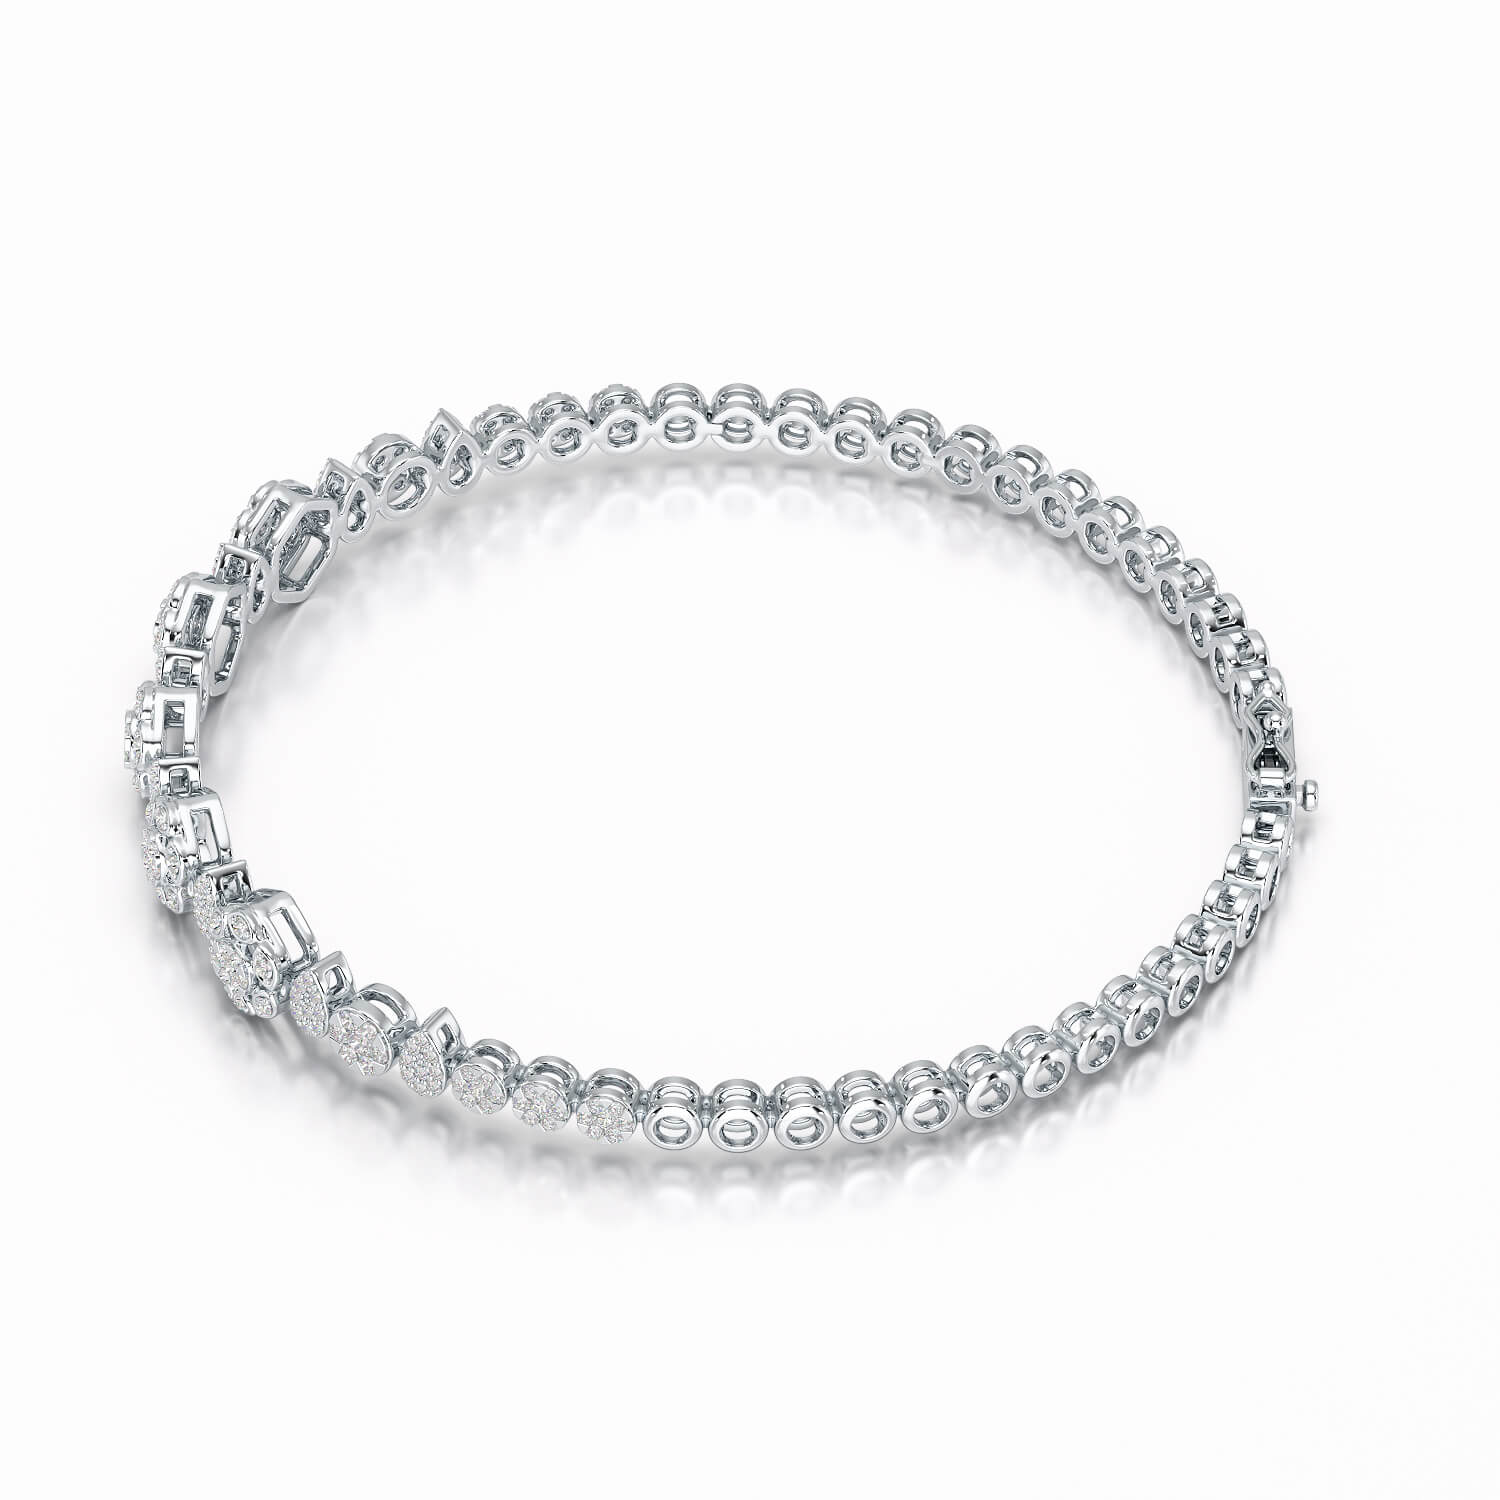 Exquisite 1.15 CT Lab Created Diamond Bracelet